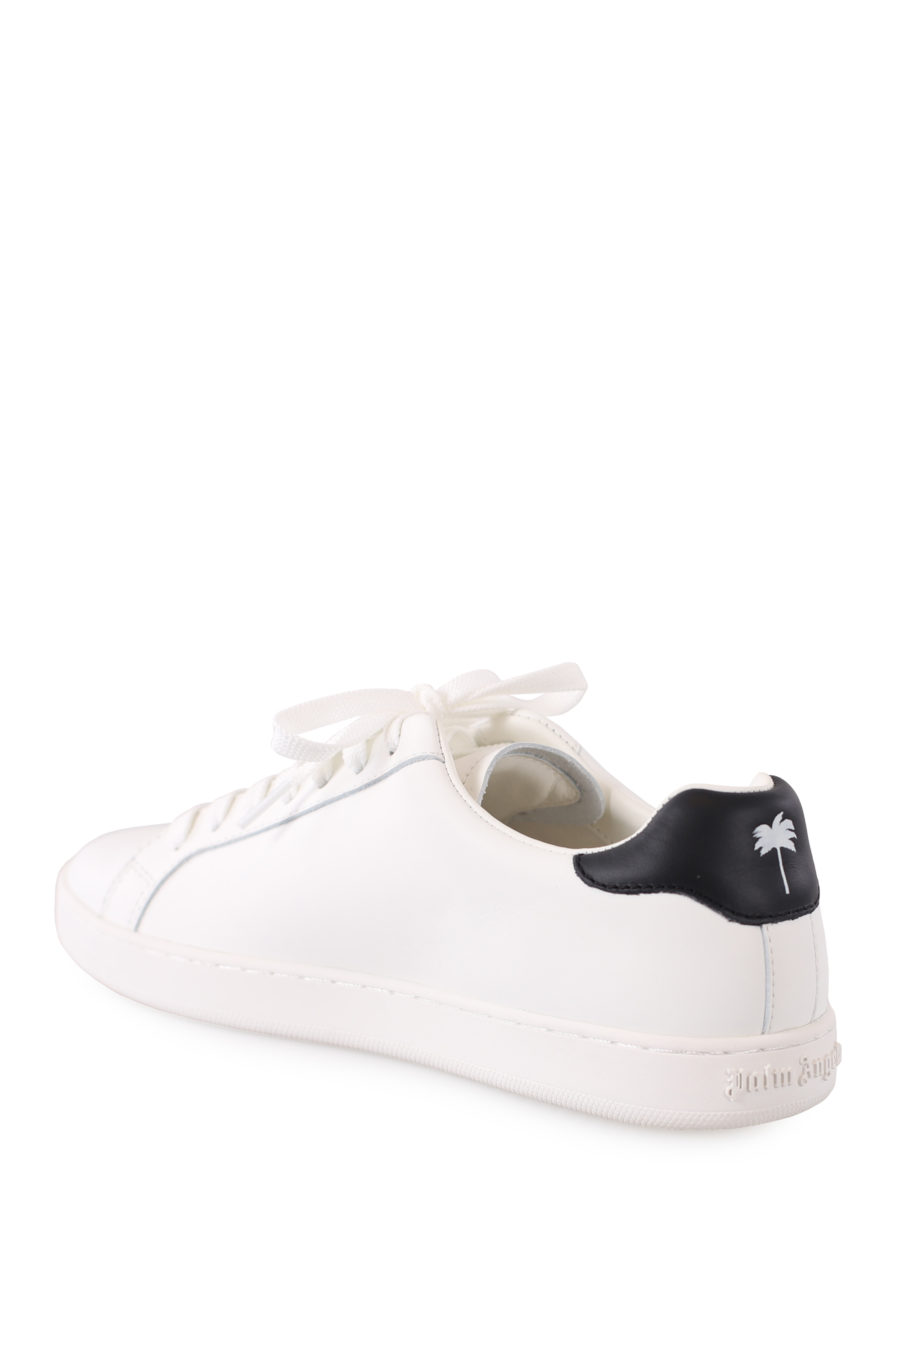 Zapatillas blancas con logo dorado - IMG 9052